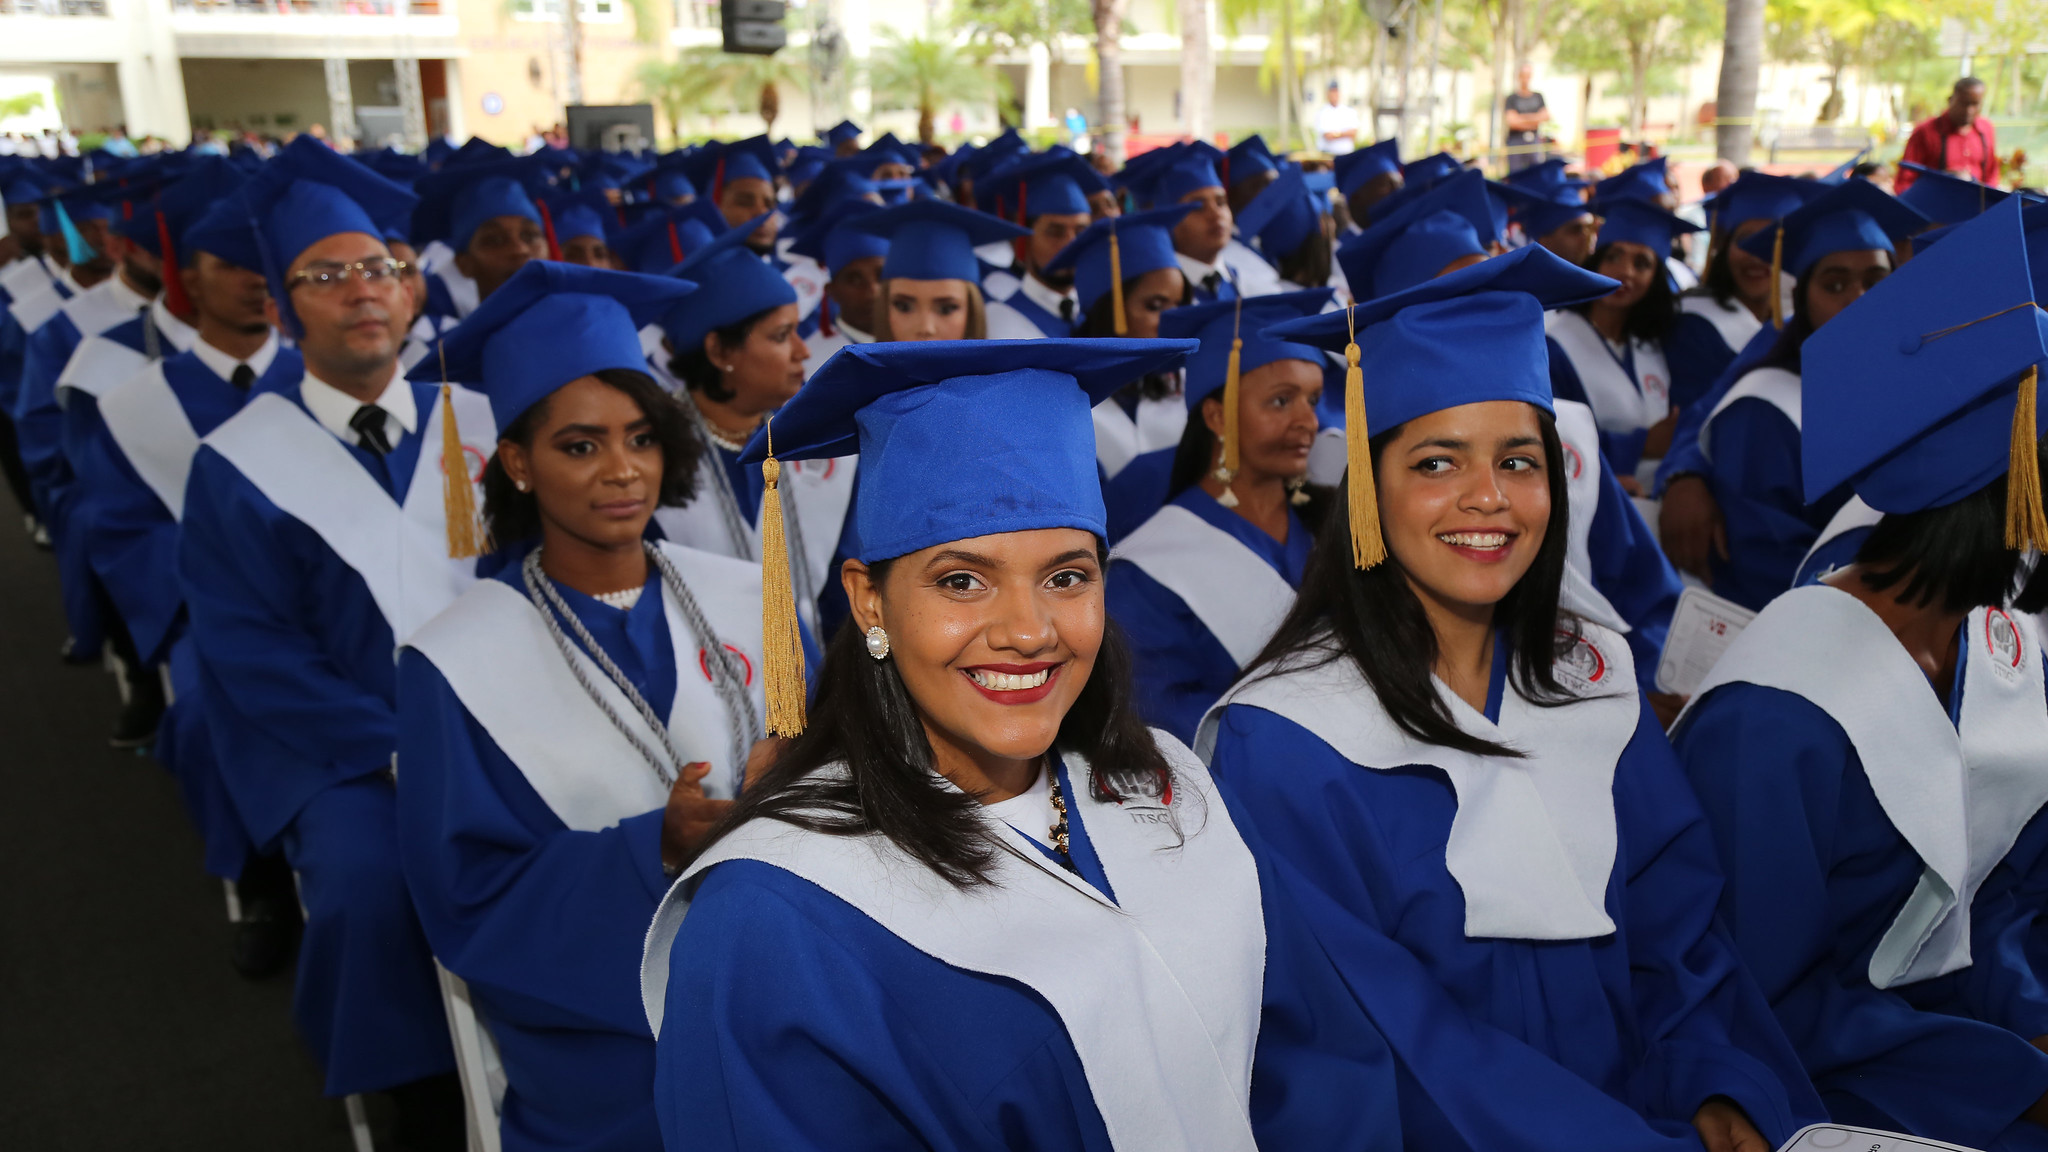 REPÚBLICA DOMINICANA: Instituto Técnico Superior Comunitario de San Luis gradúa 478 técnicos en salud, artes, electrónica y más